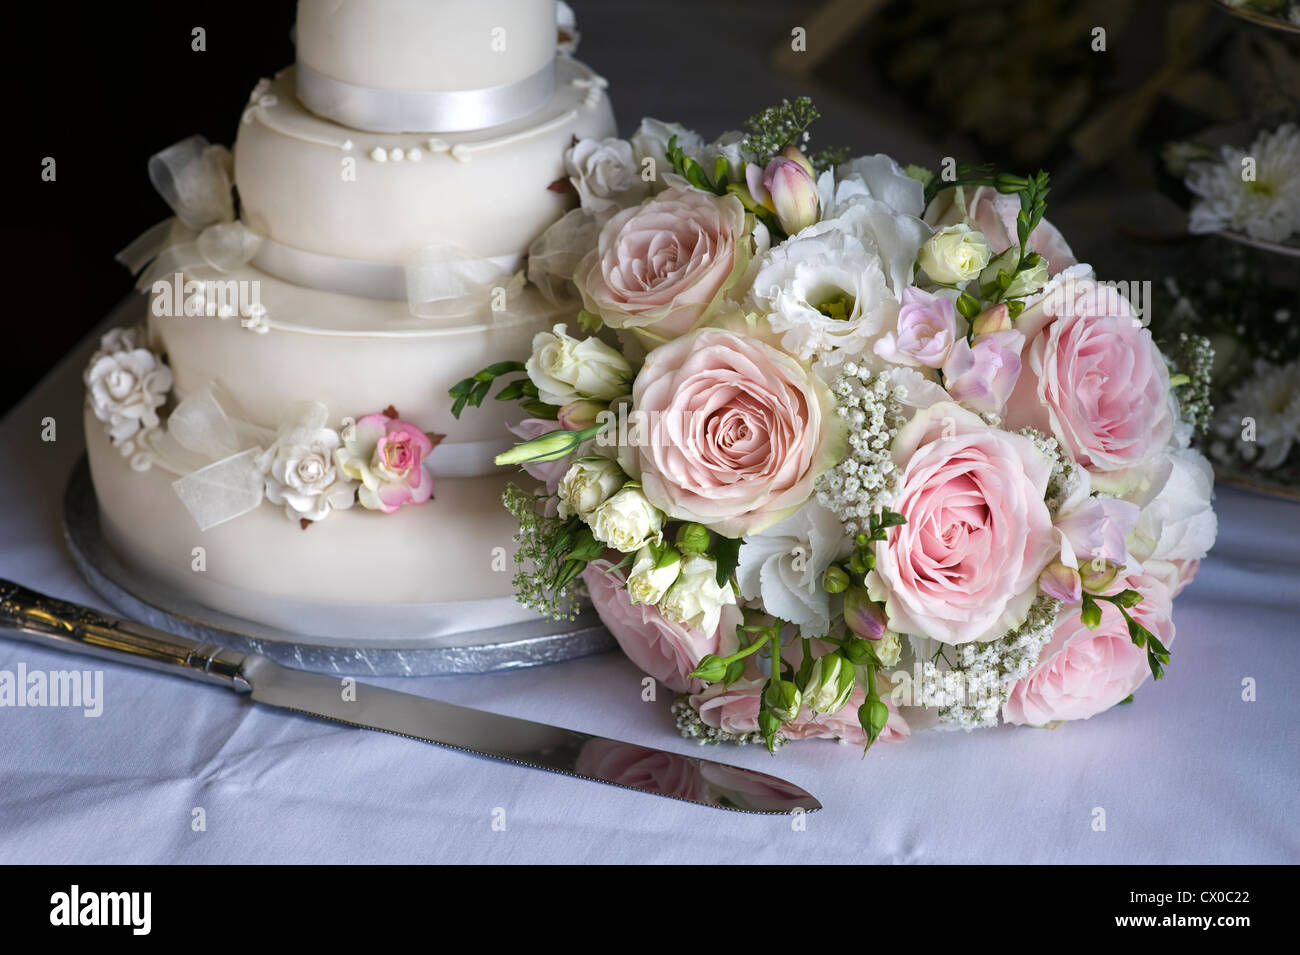 Mariage bouquet de roses roses et blanches avec le gâteau de mariage Banque D'Images